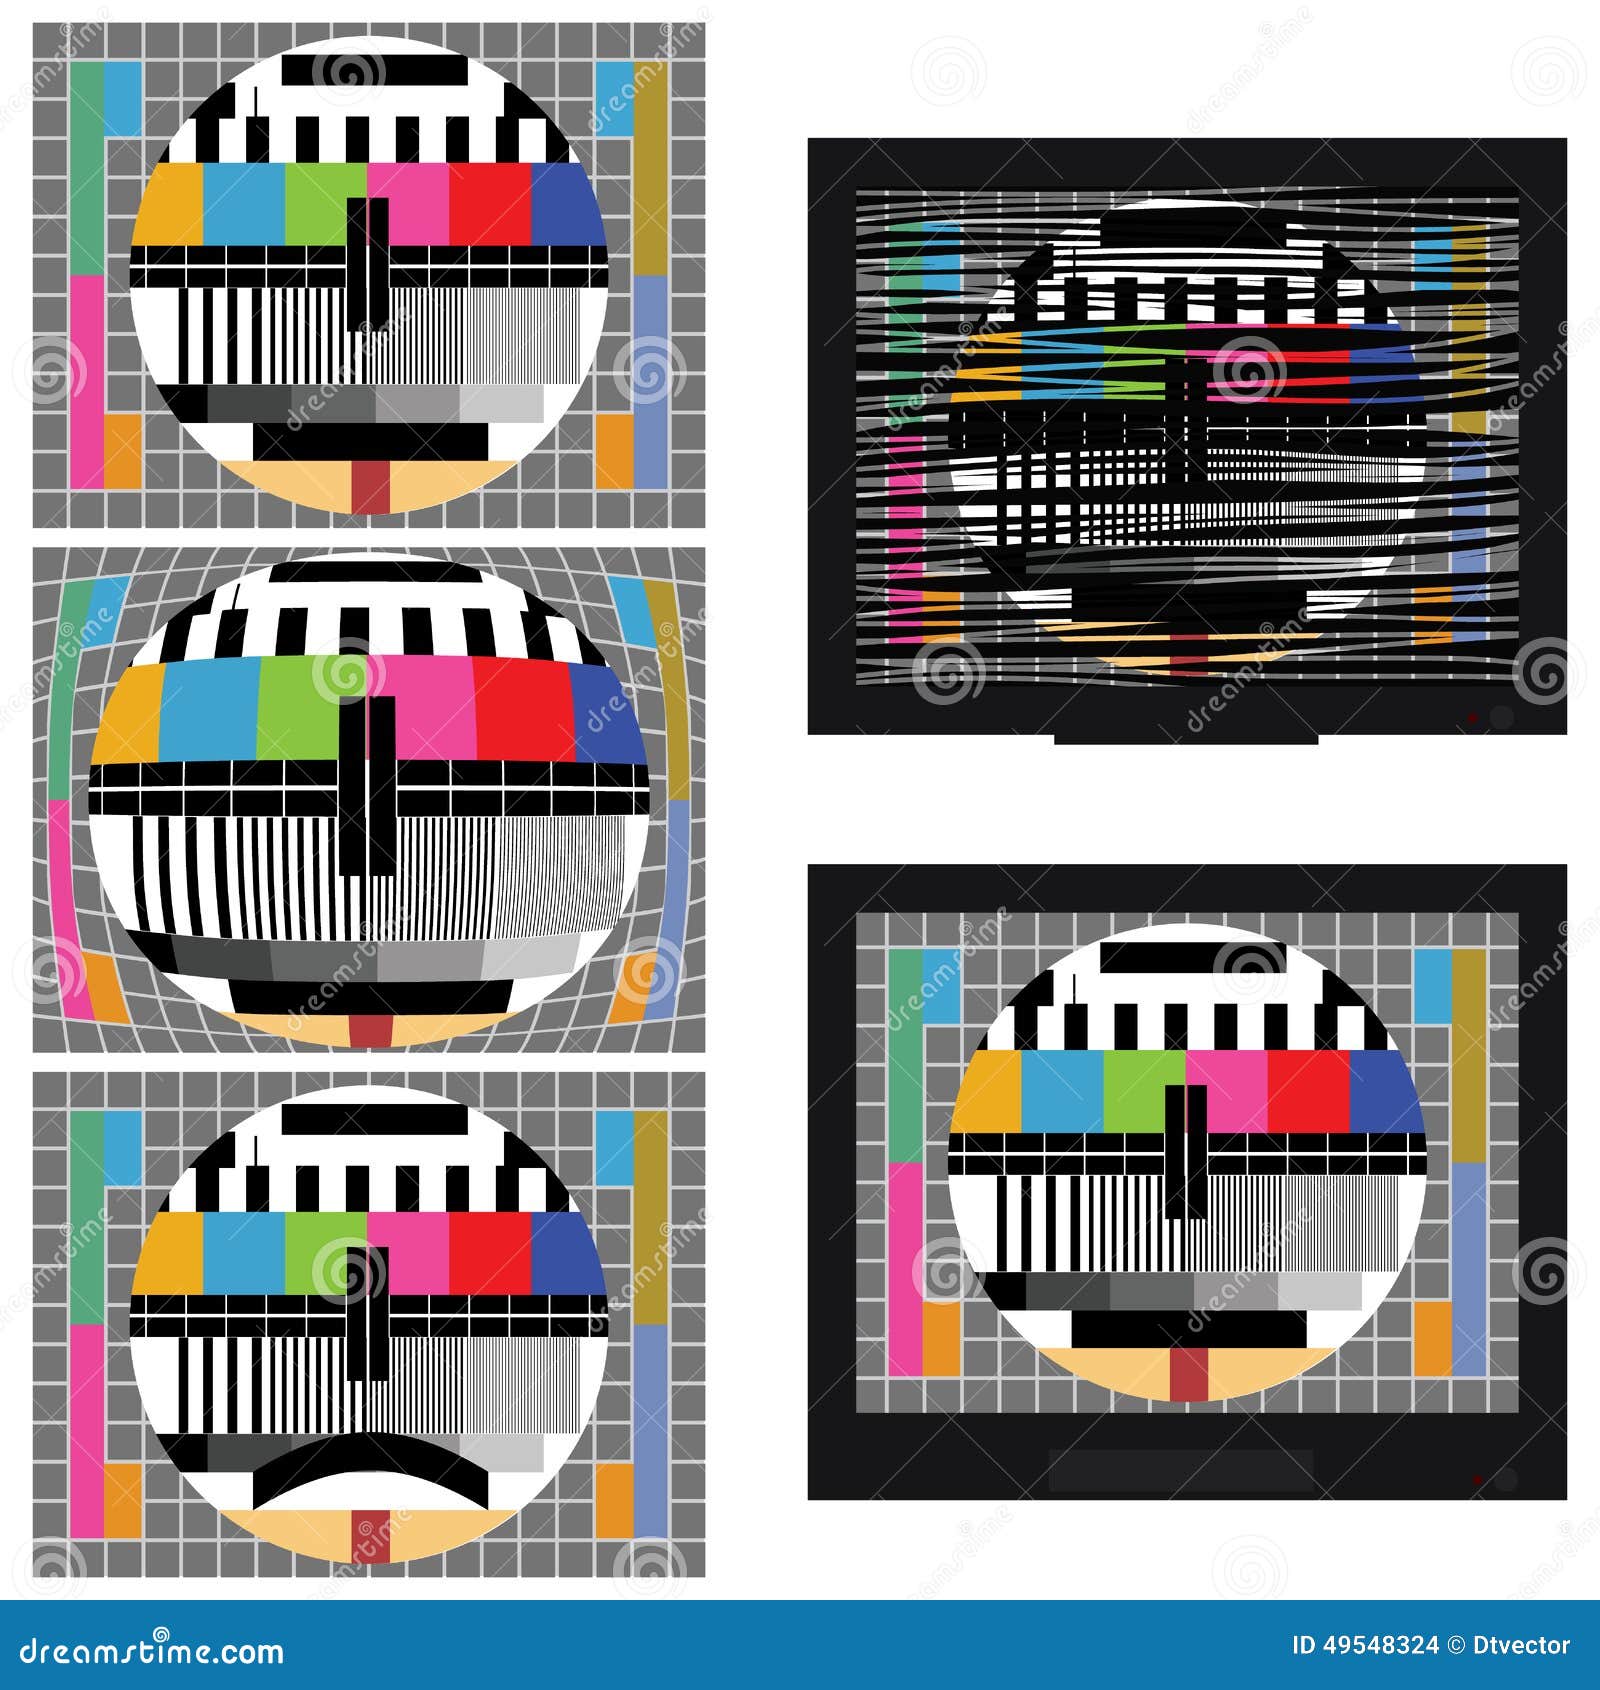 bad aangenaam Medic TV-Kleuren Statische Test vector illustratie. Illustration of leeg -  49548324